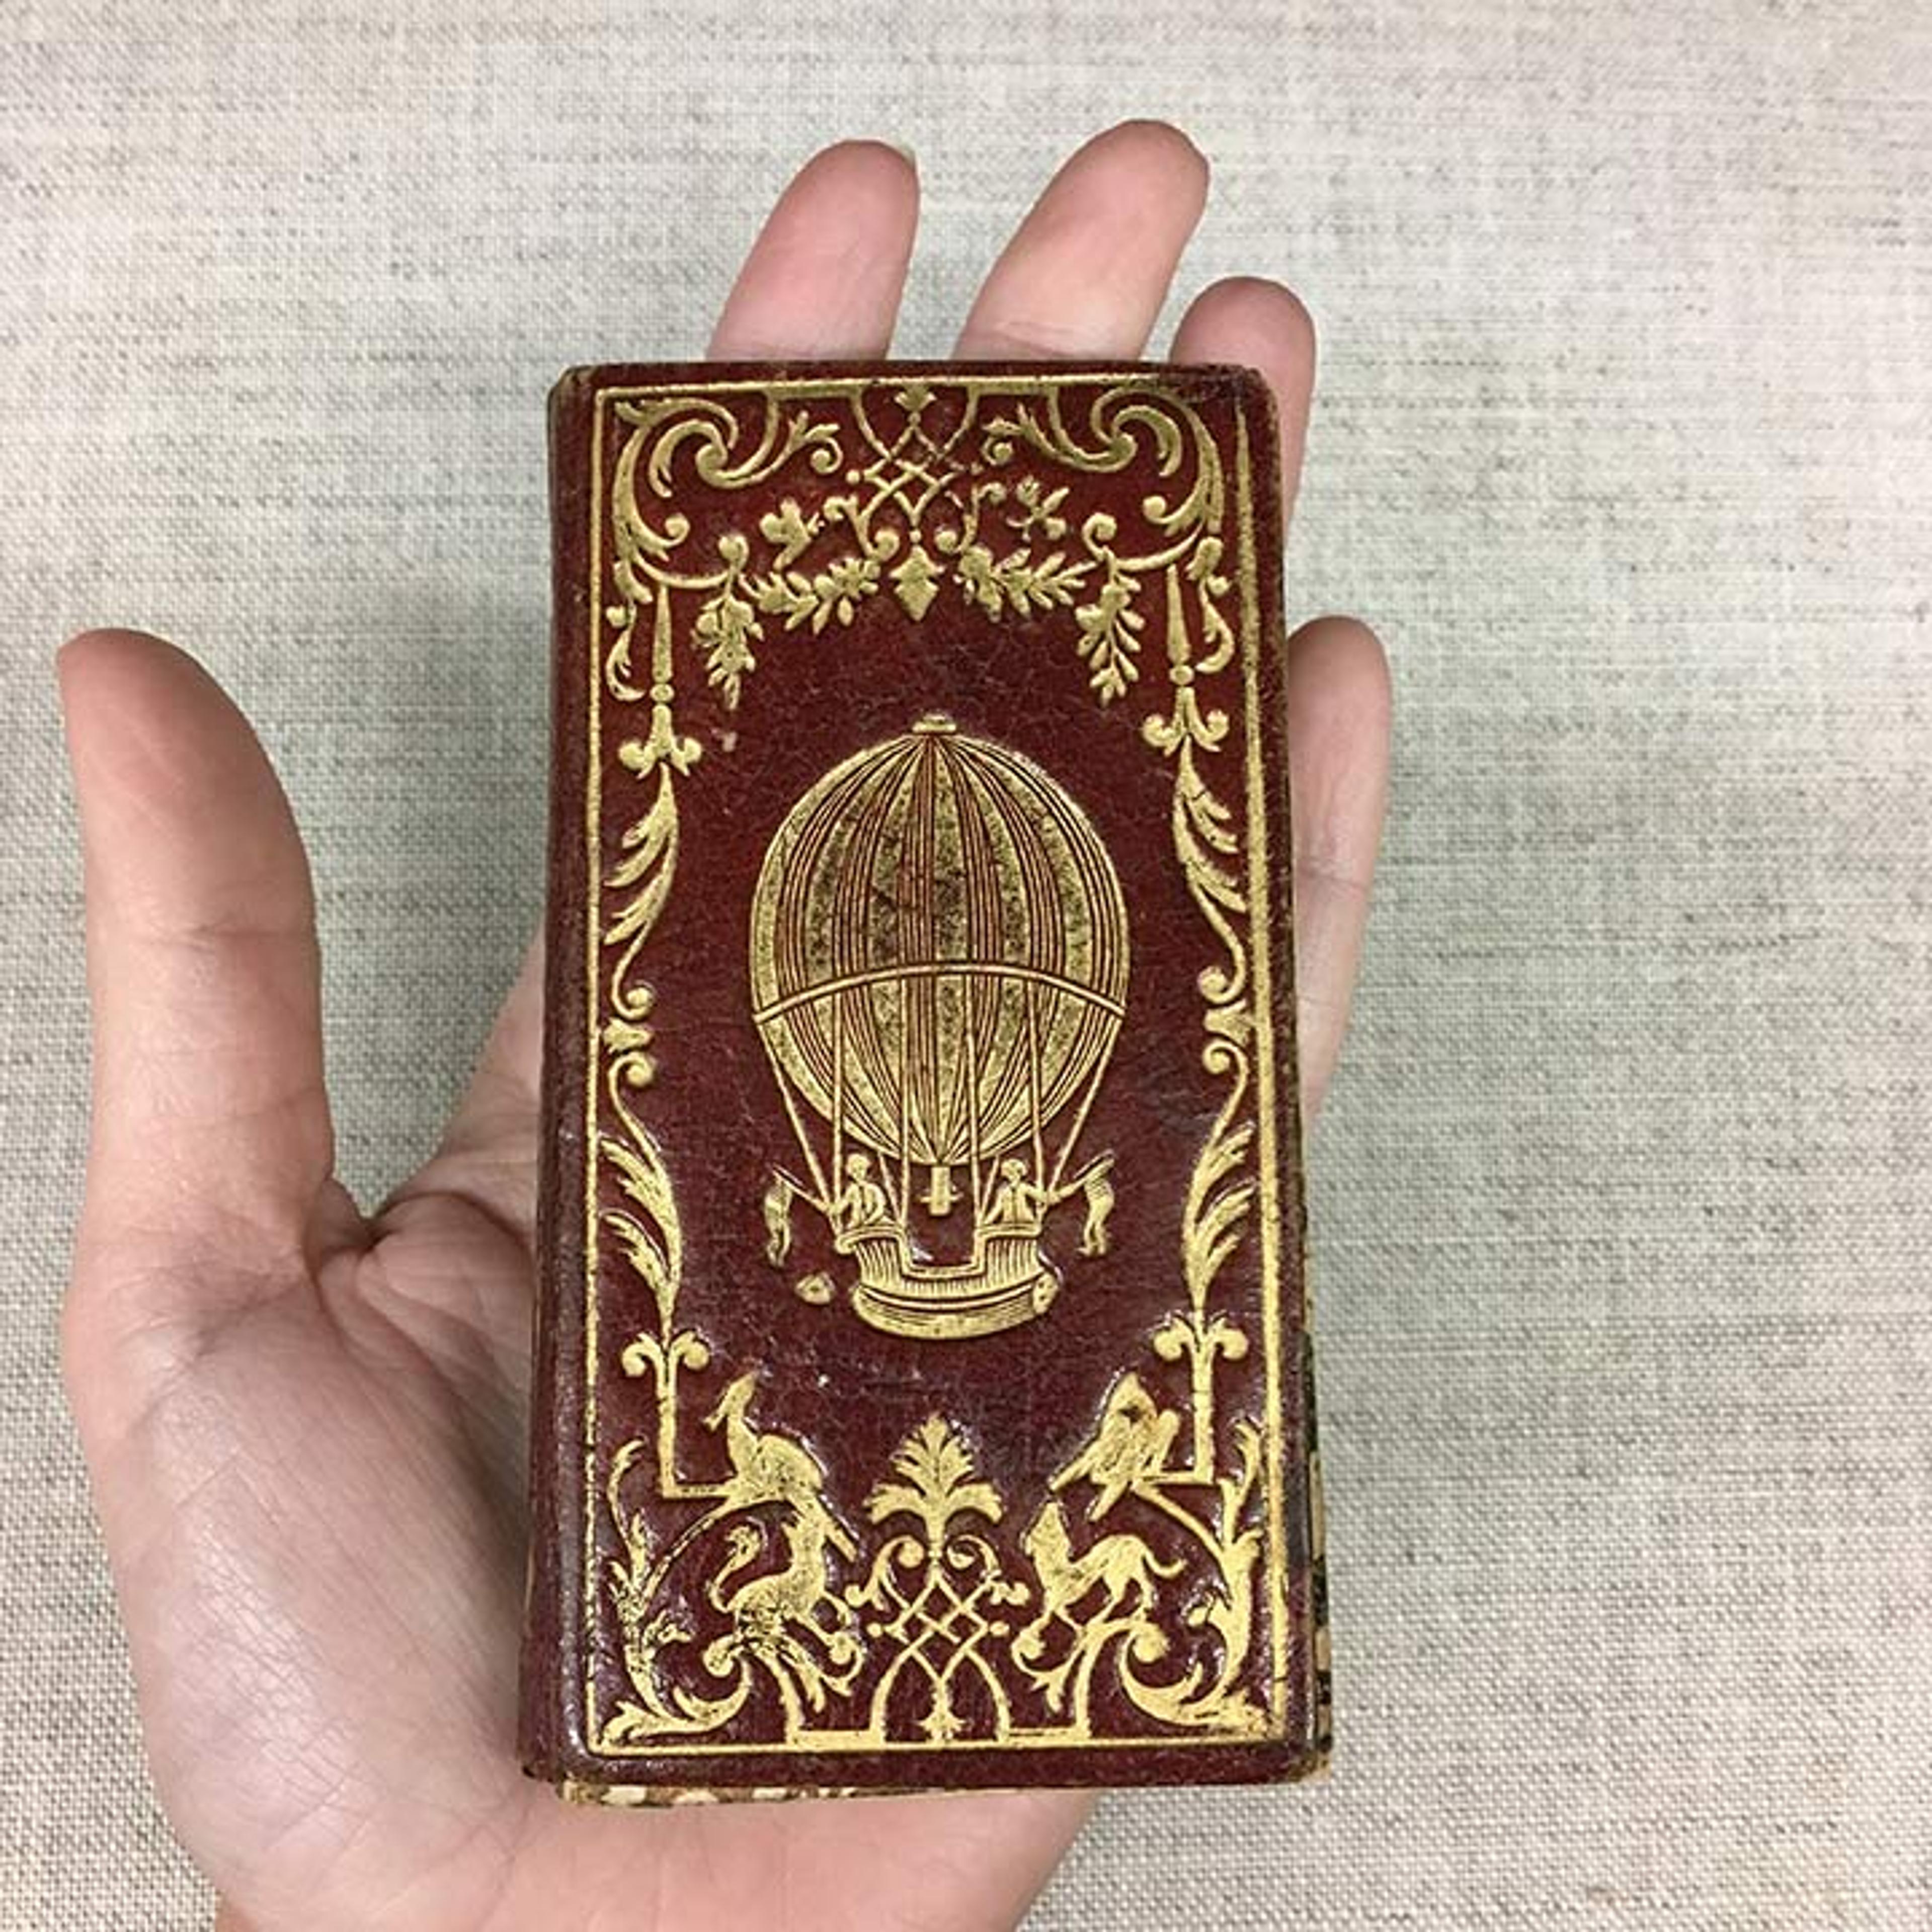 Small book